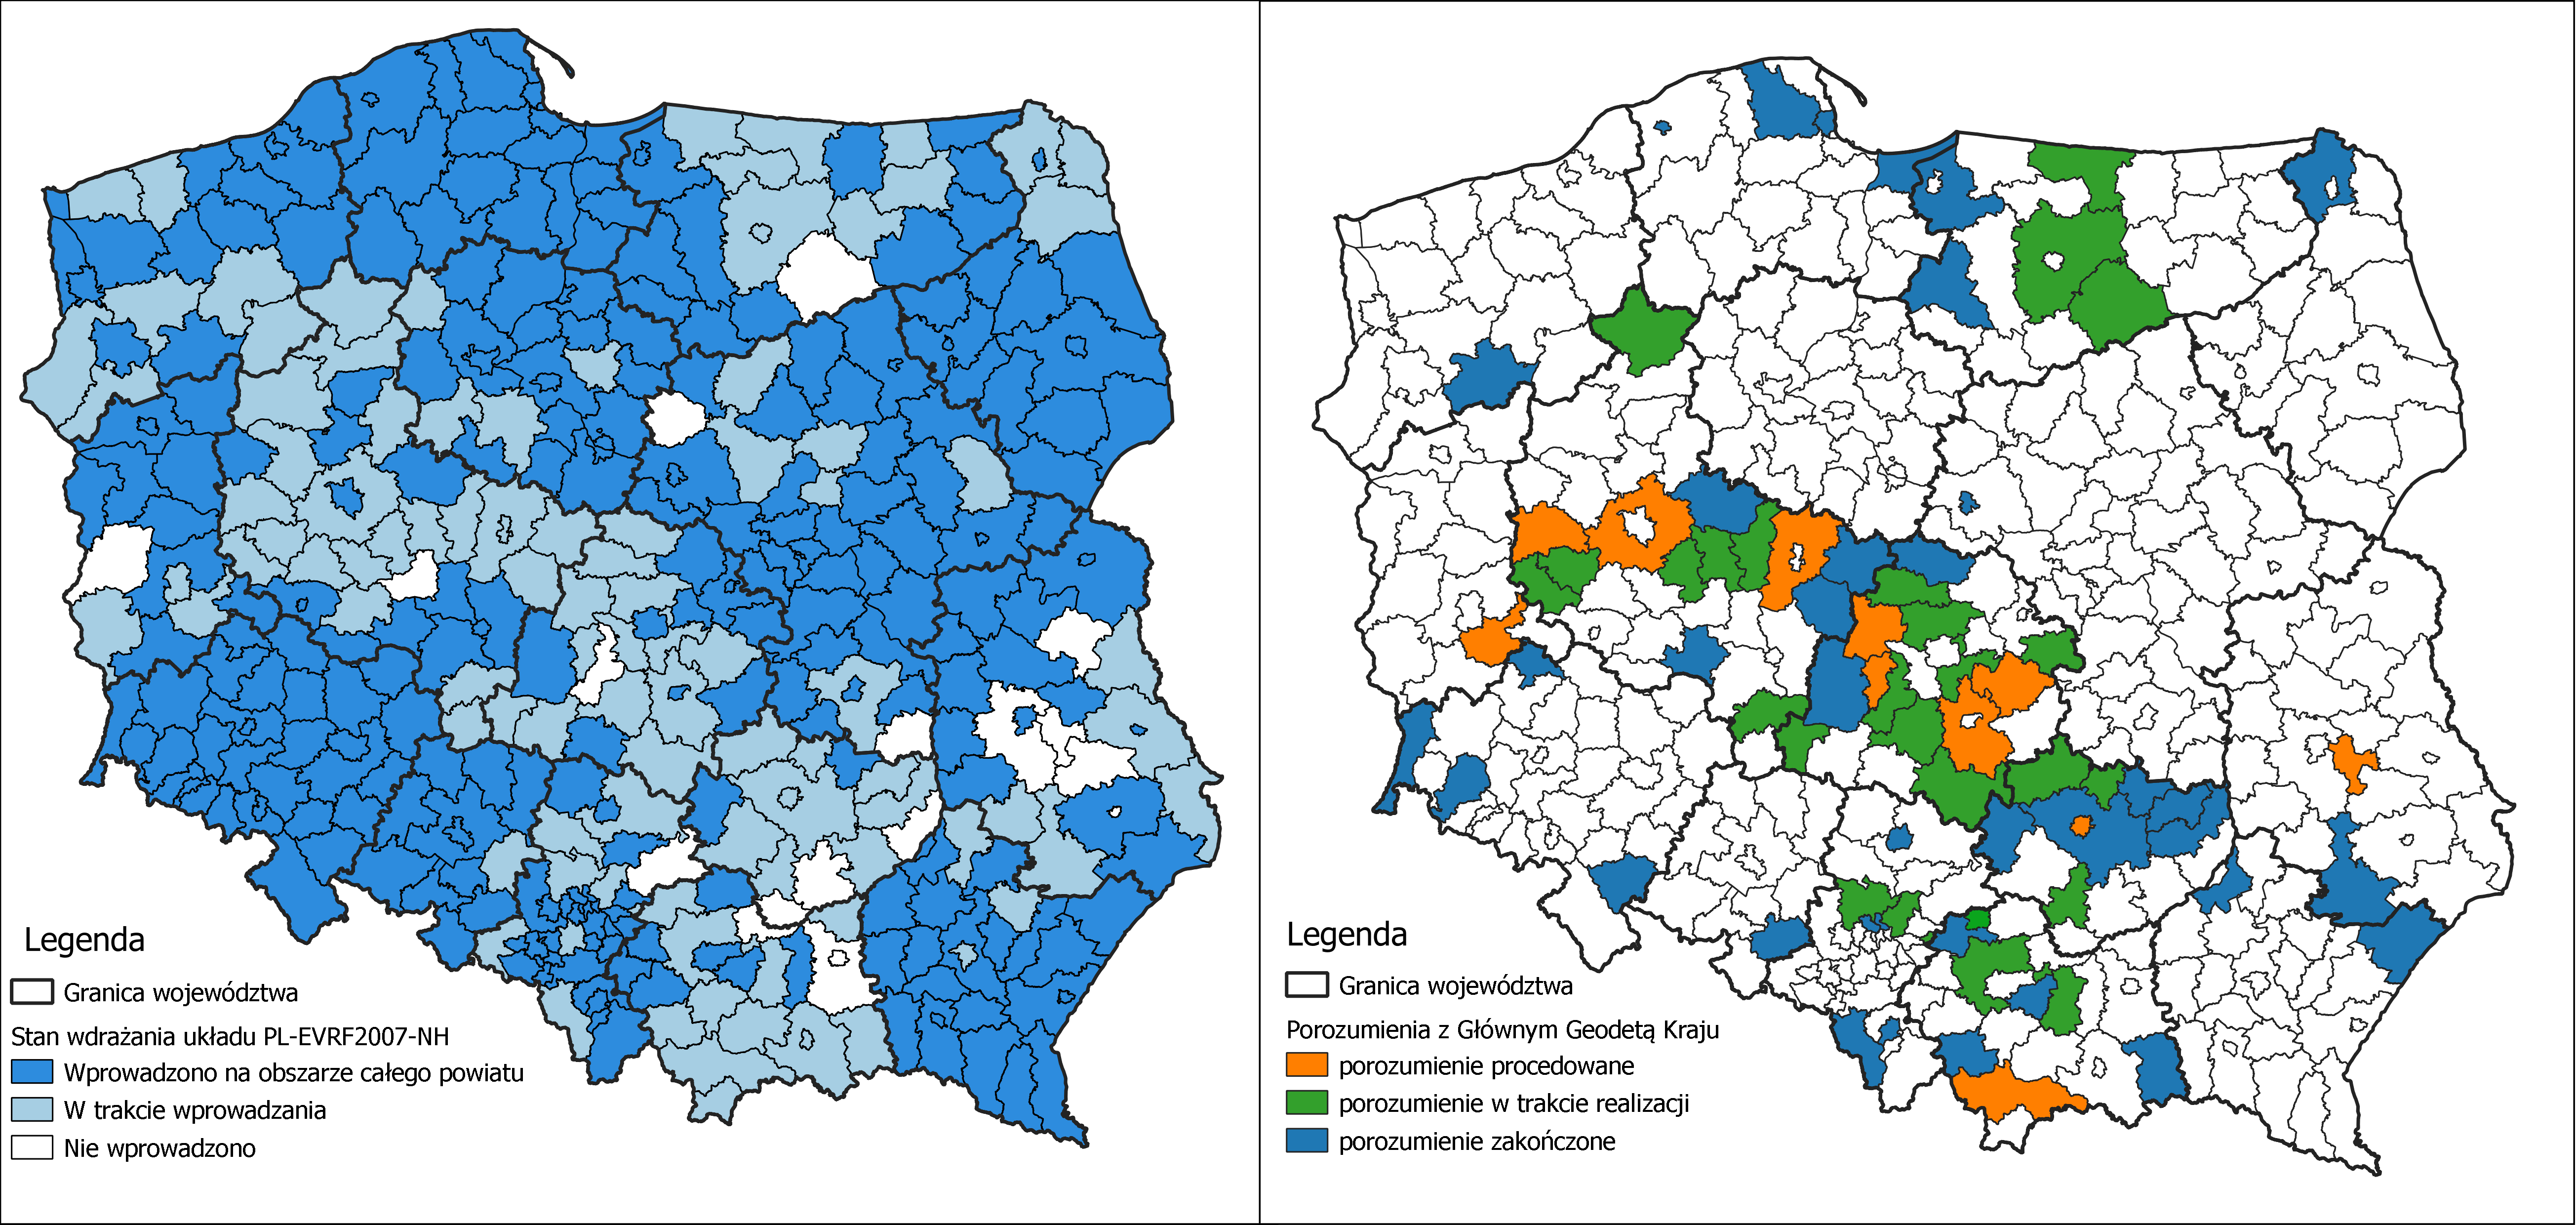 Ilustracja przedstawia zetawione obok siebie 2 mapy Polski z oznaczonymi kolorystycznie: stanem wdrażania układu PL-EVRF2007-NH w powiatach po lewej stronie i powiatami, z którymi zawarte zostało porozumienie po prawej stronie.